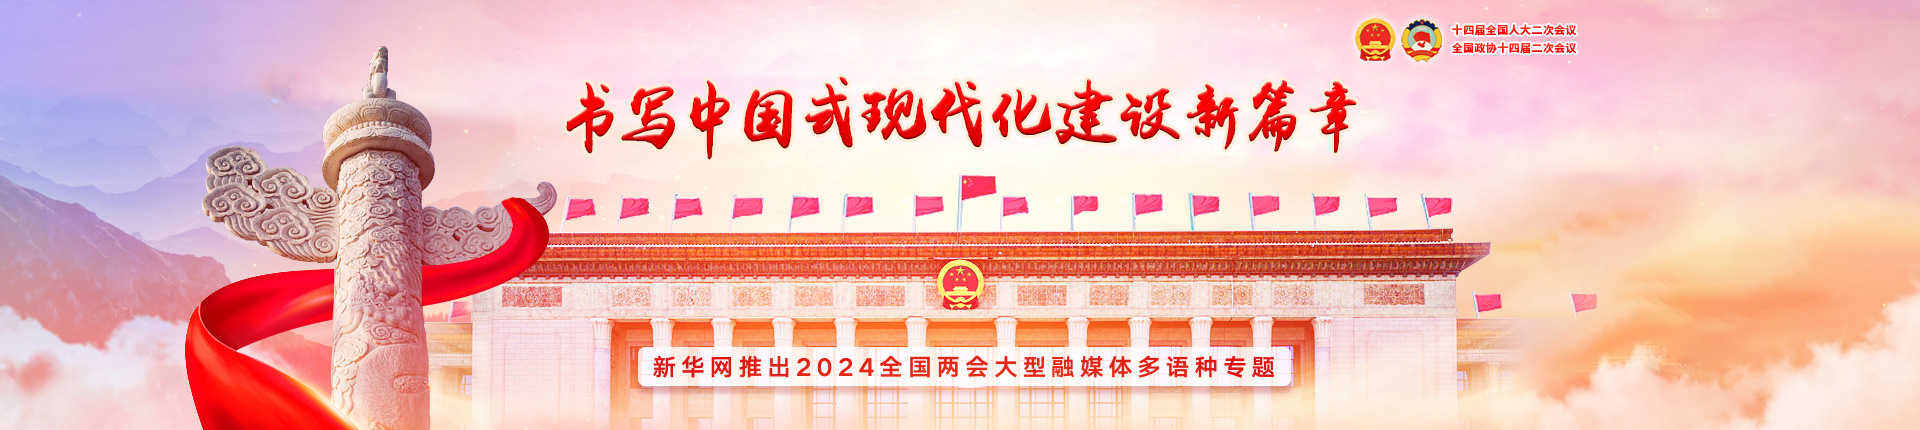 新華網は2024年全国両会の大型融和メディアの多言語テーマを発表